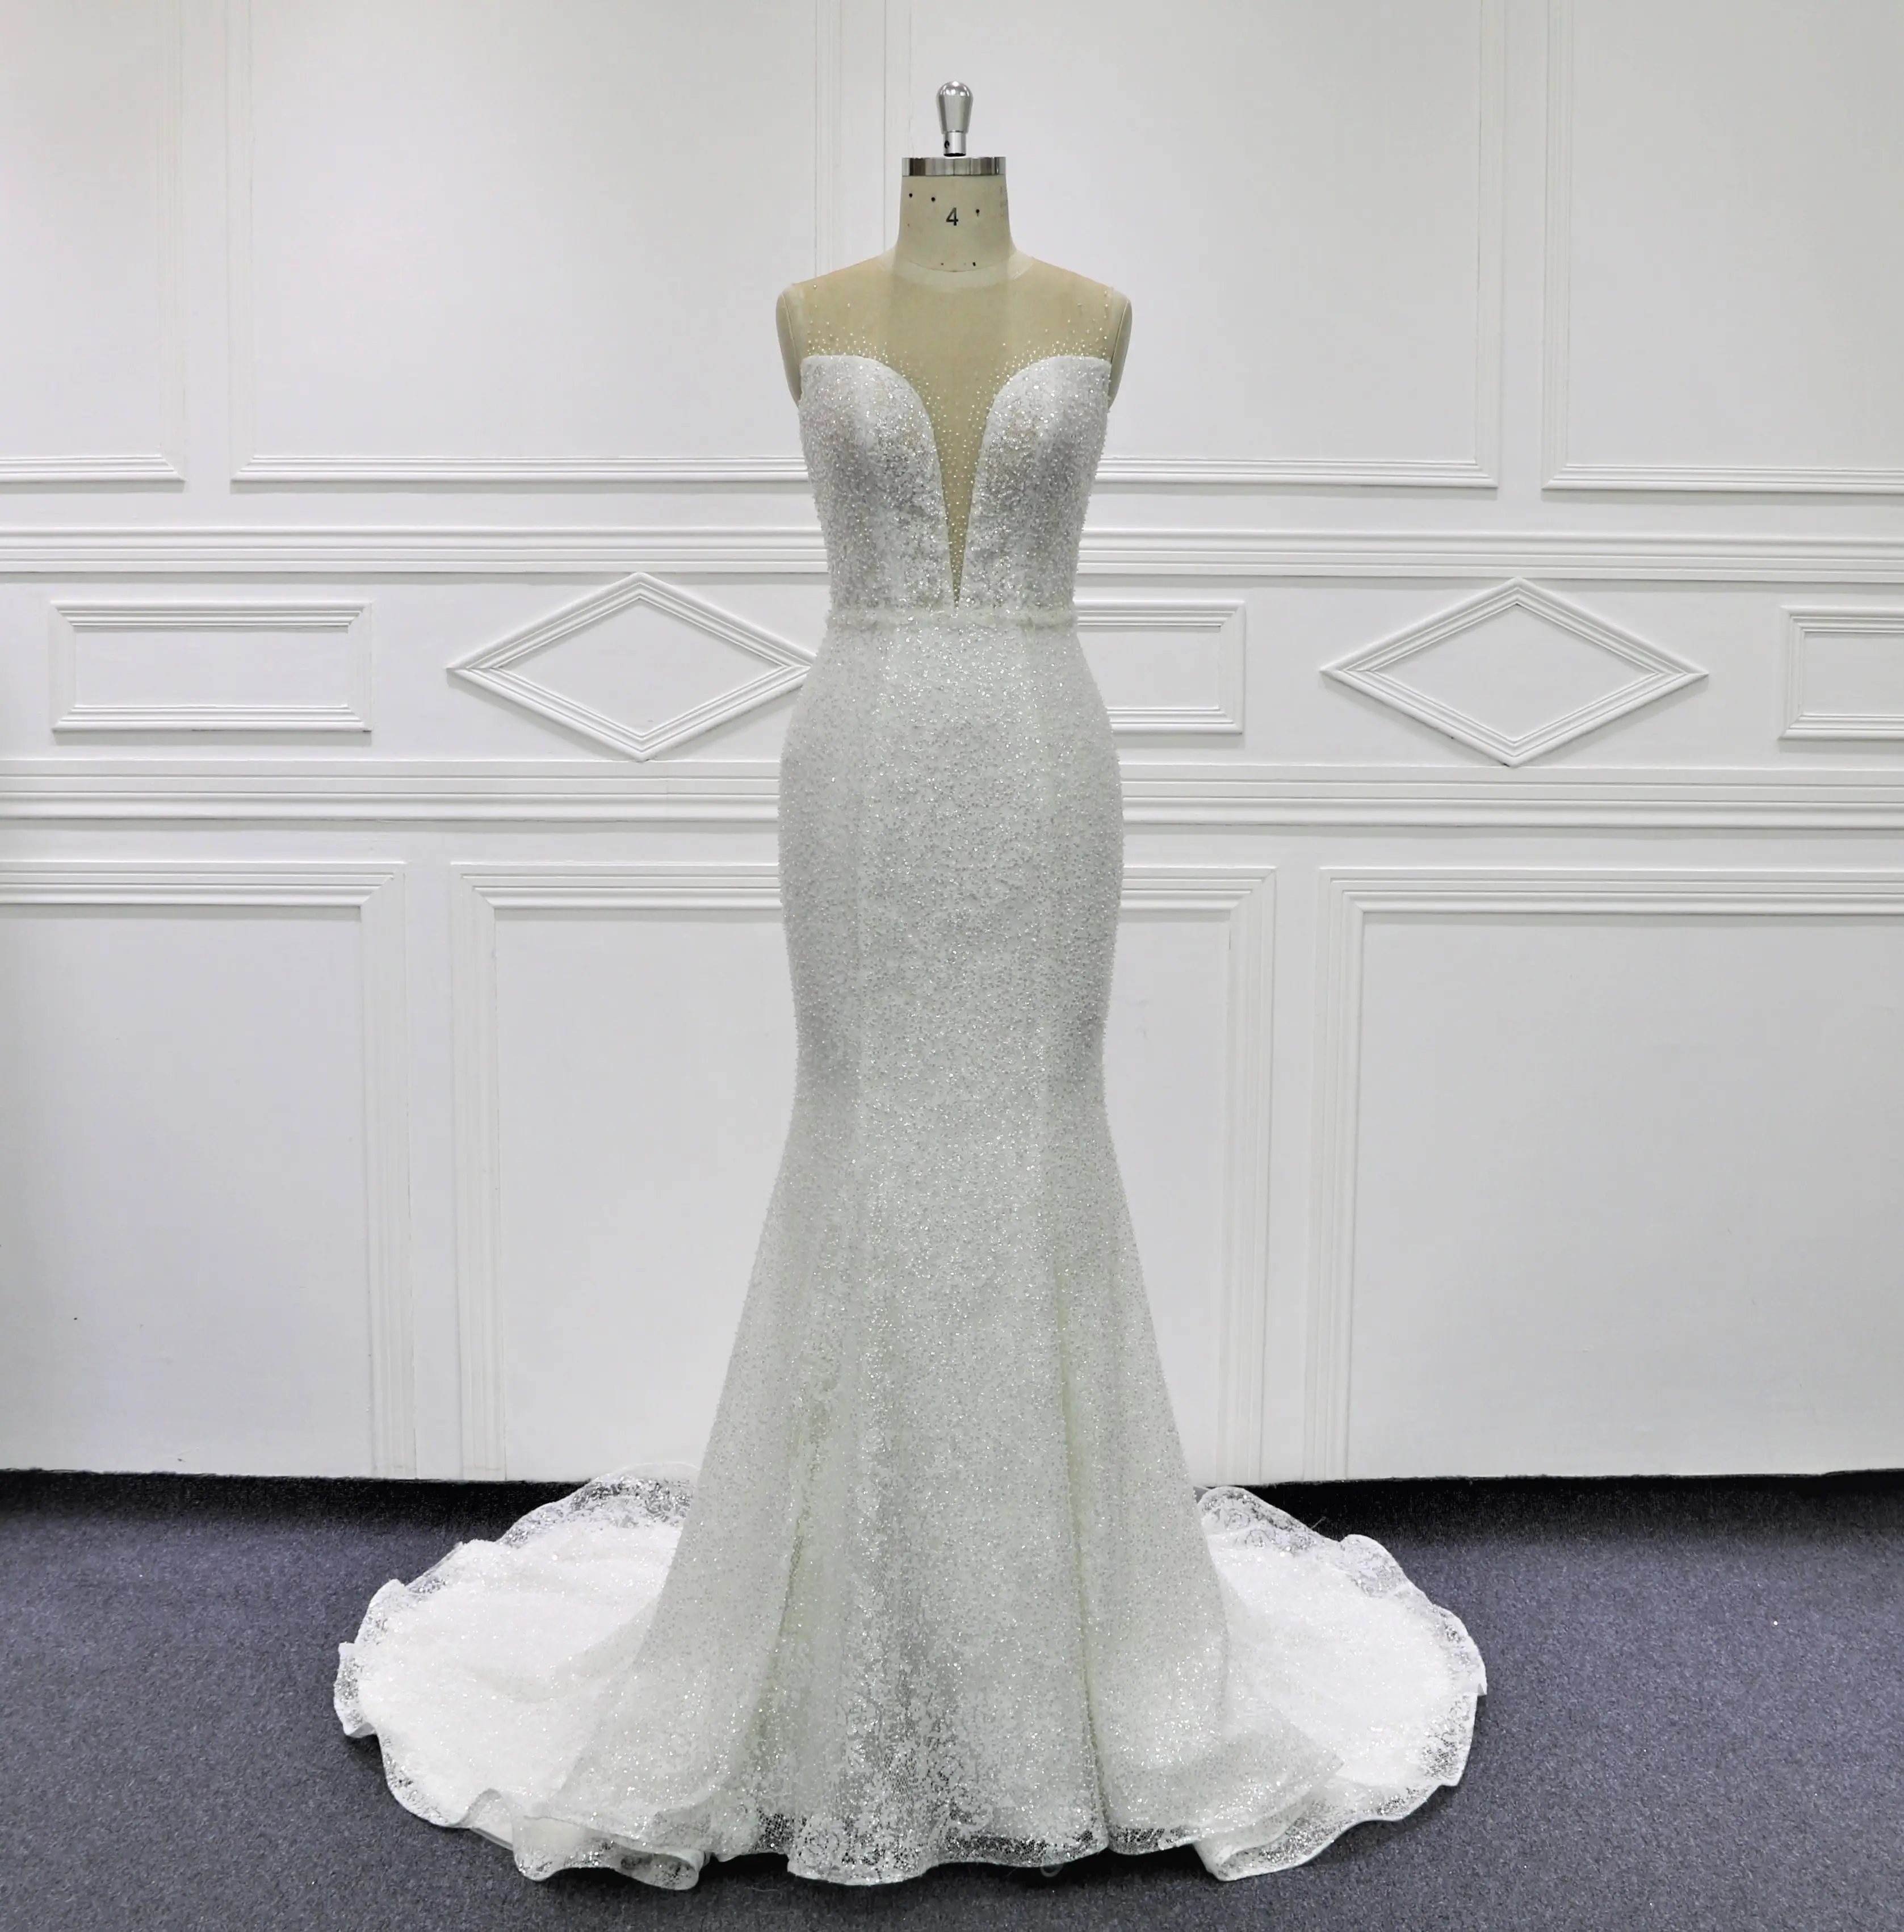 Beaury gaun pengantin kualitas tinggi berkilau renda gaun pernikahan putri duyung MK306 ilusi belakang dengan kancing pesta formal